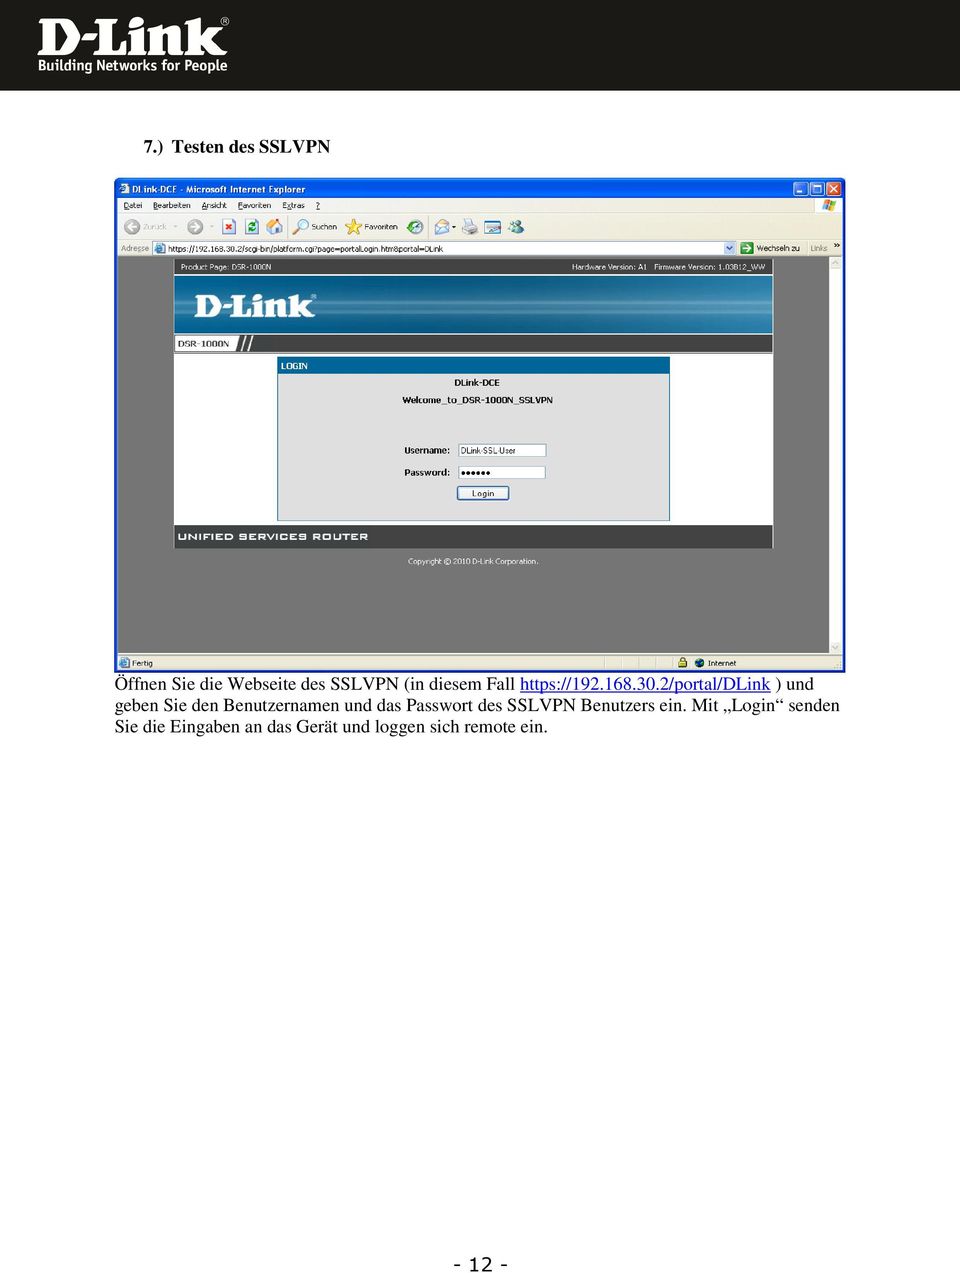 2/portal/dlink ) und geben Sie den Benutzernamen und das Passwort